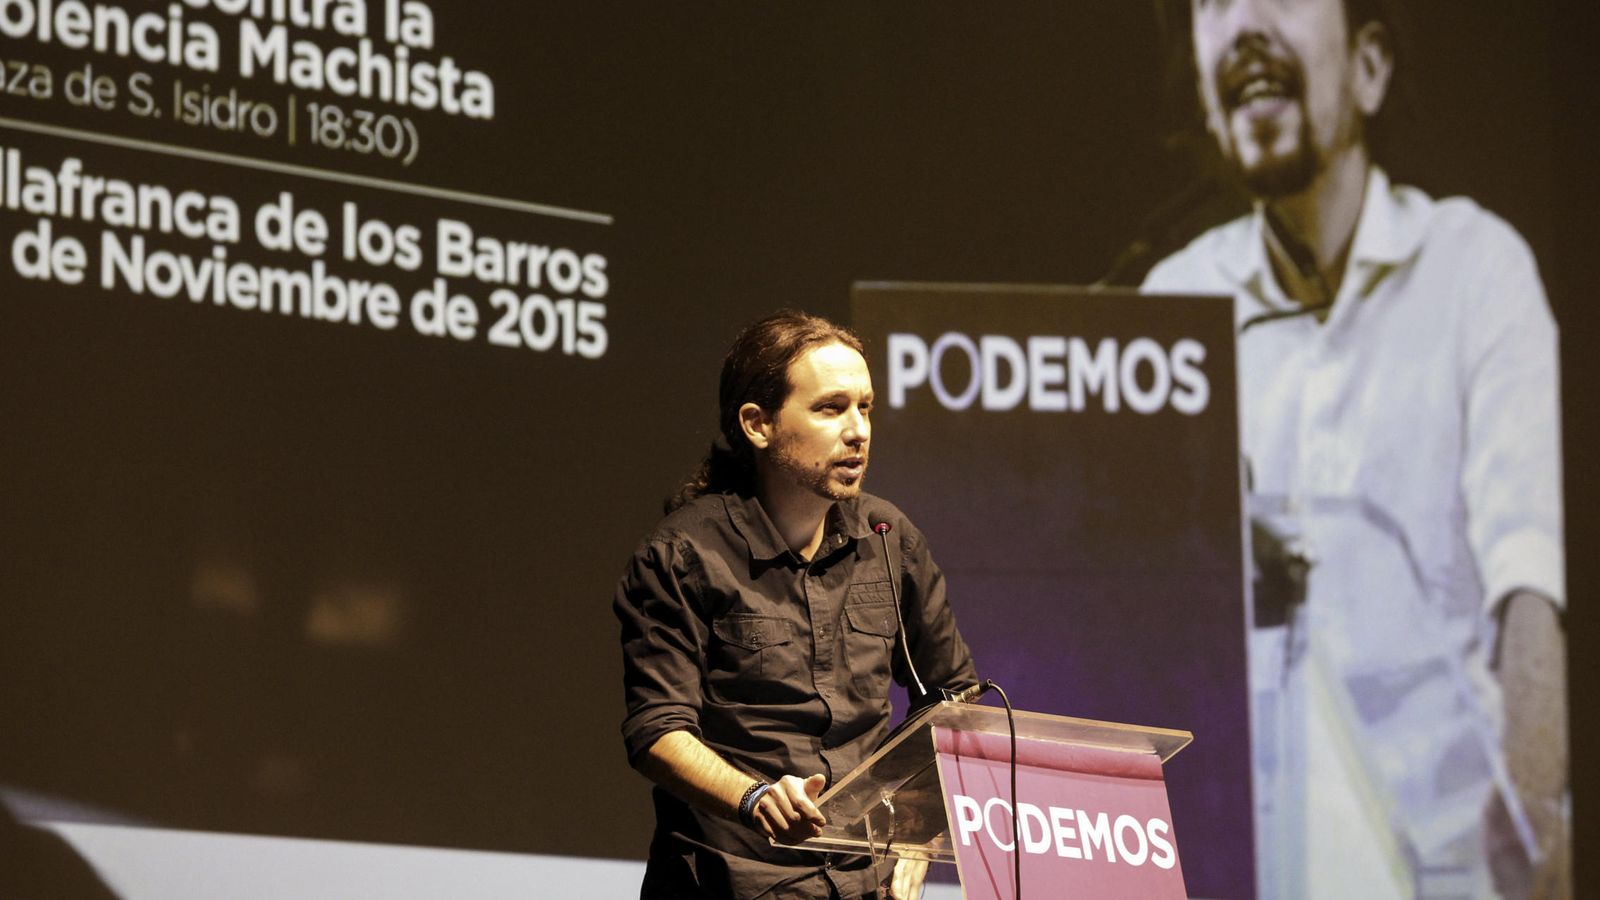 Foto: El candidato a la Presidencia del Gobierno de Podemos, Pablo Iglesias, durante su intervención en un acto ayer en Villafranca de los Barros, Badajoz. (EFE)